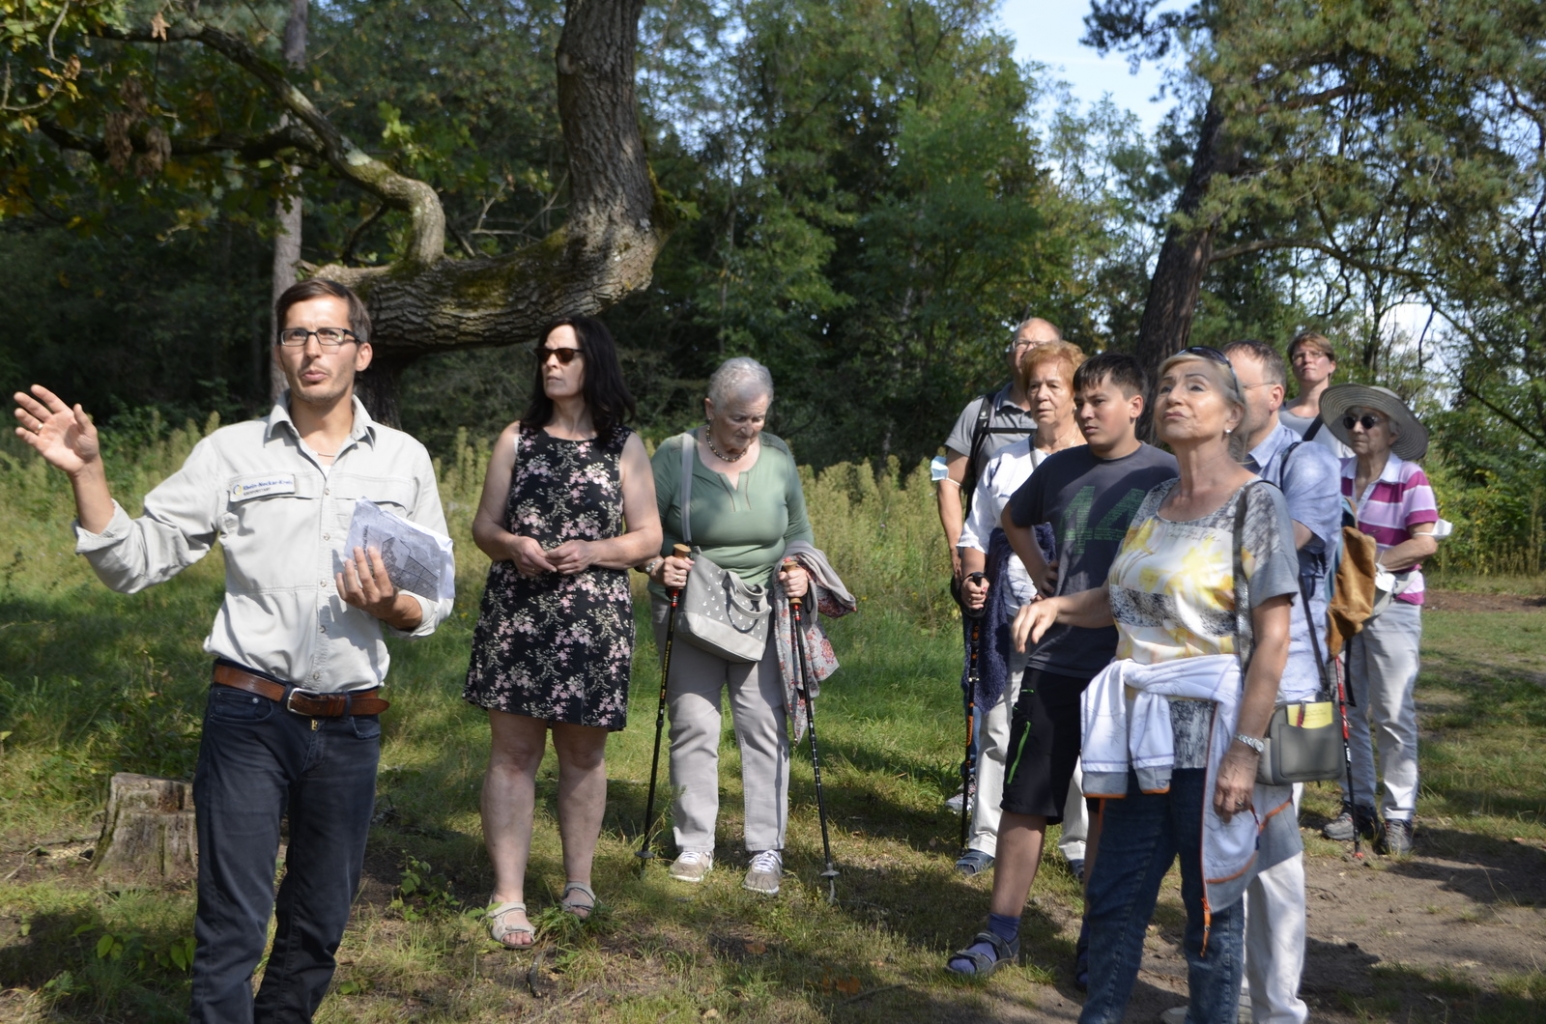 Forstbezirksleiter Philipp Schweigler bei einer geführten Exkursion mit Gästen.